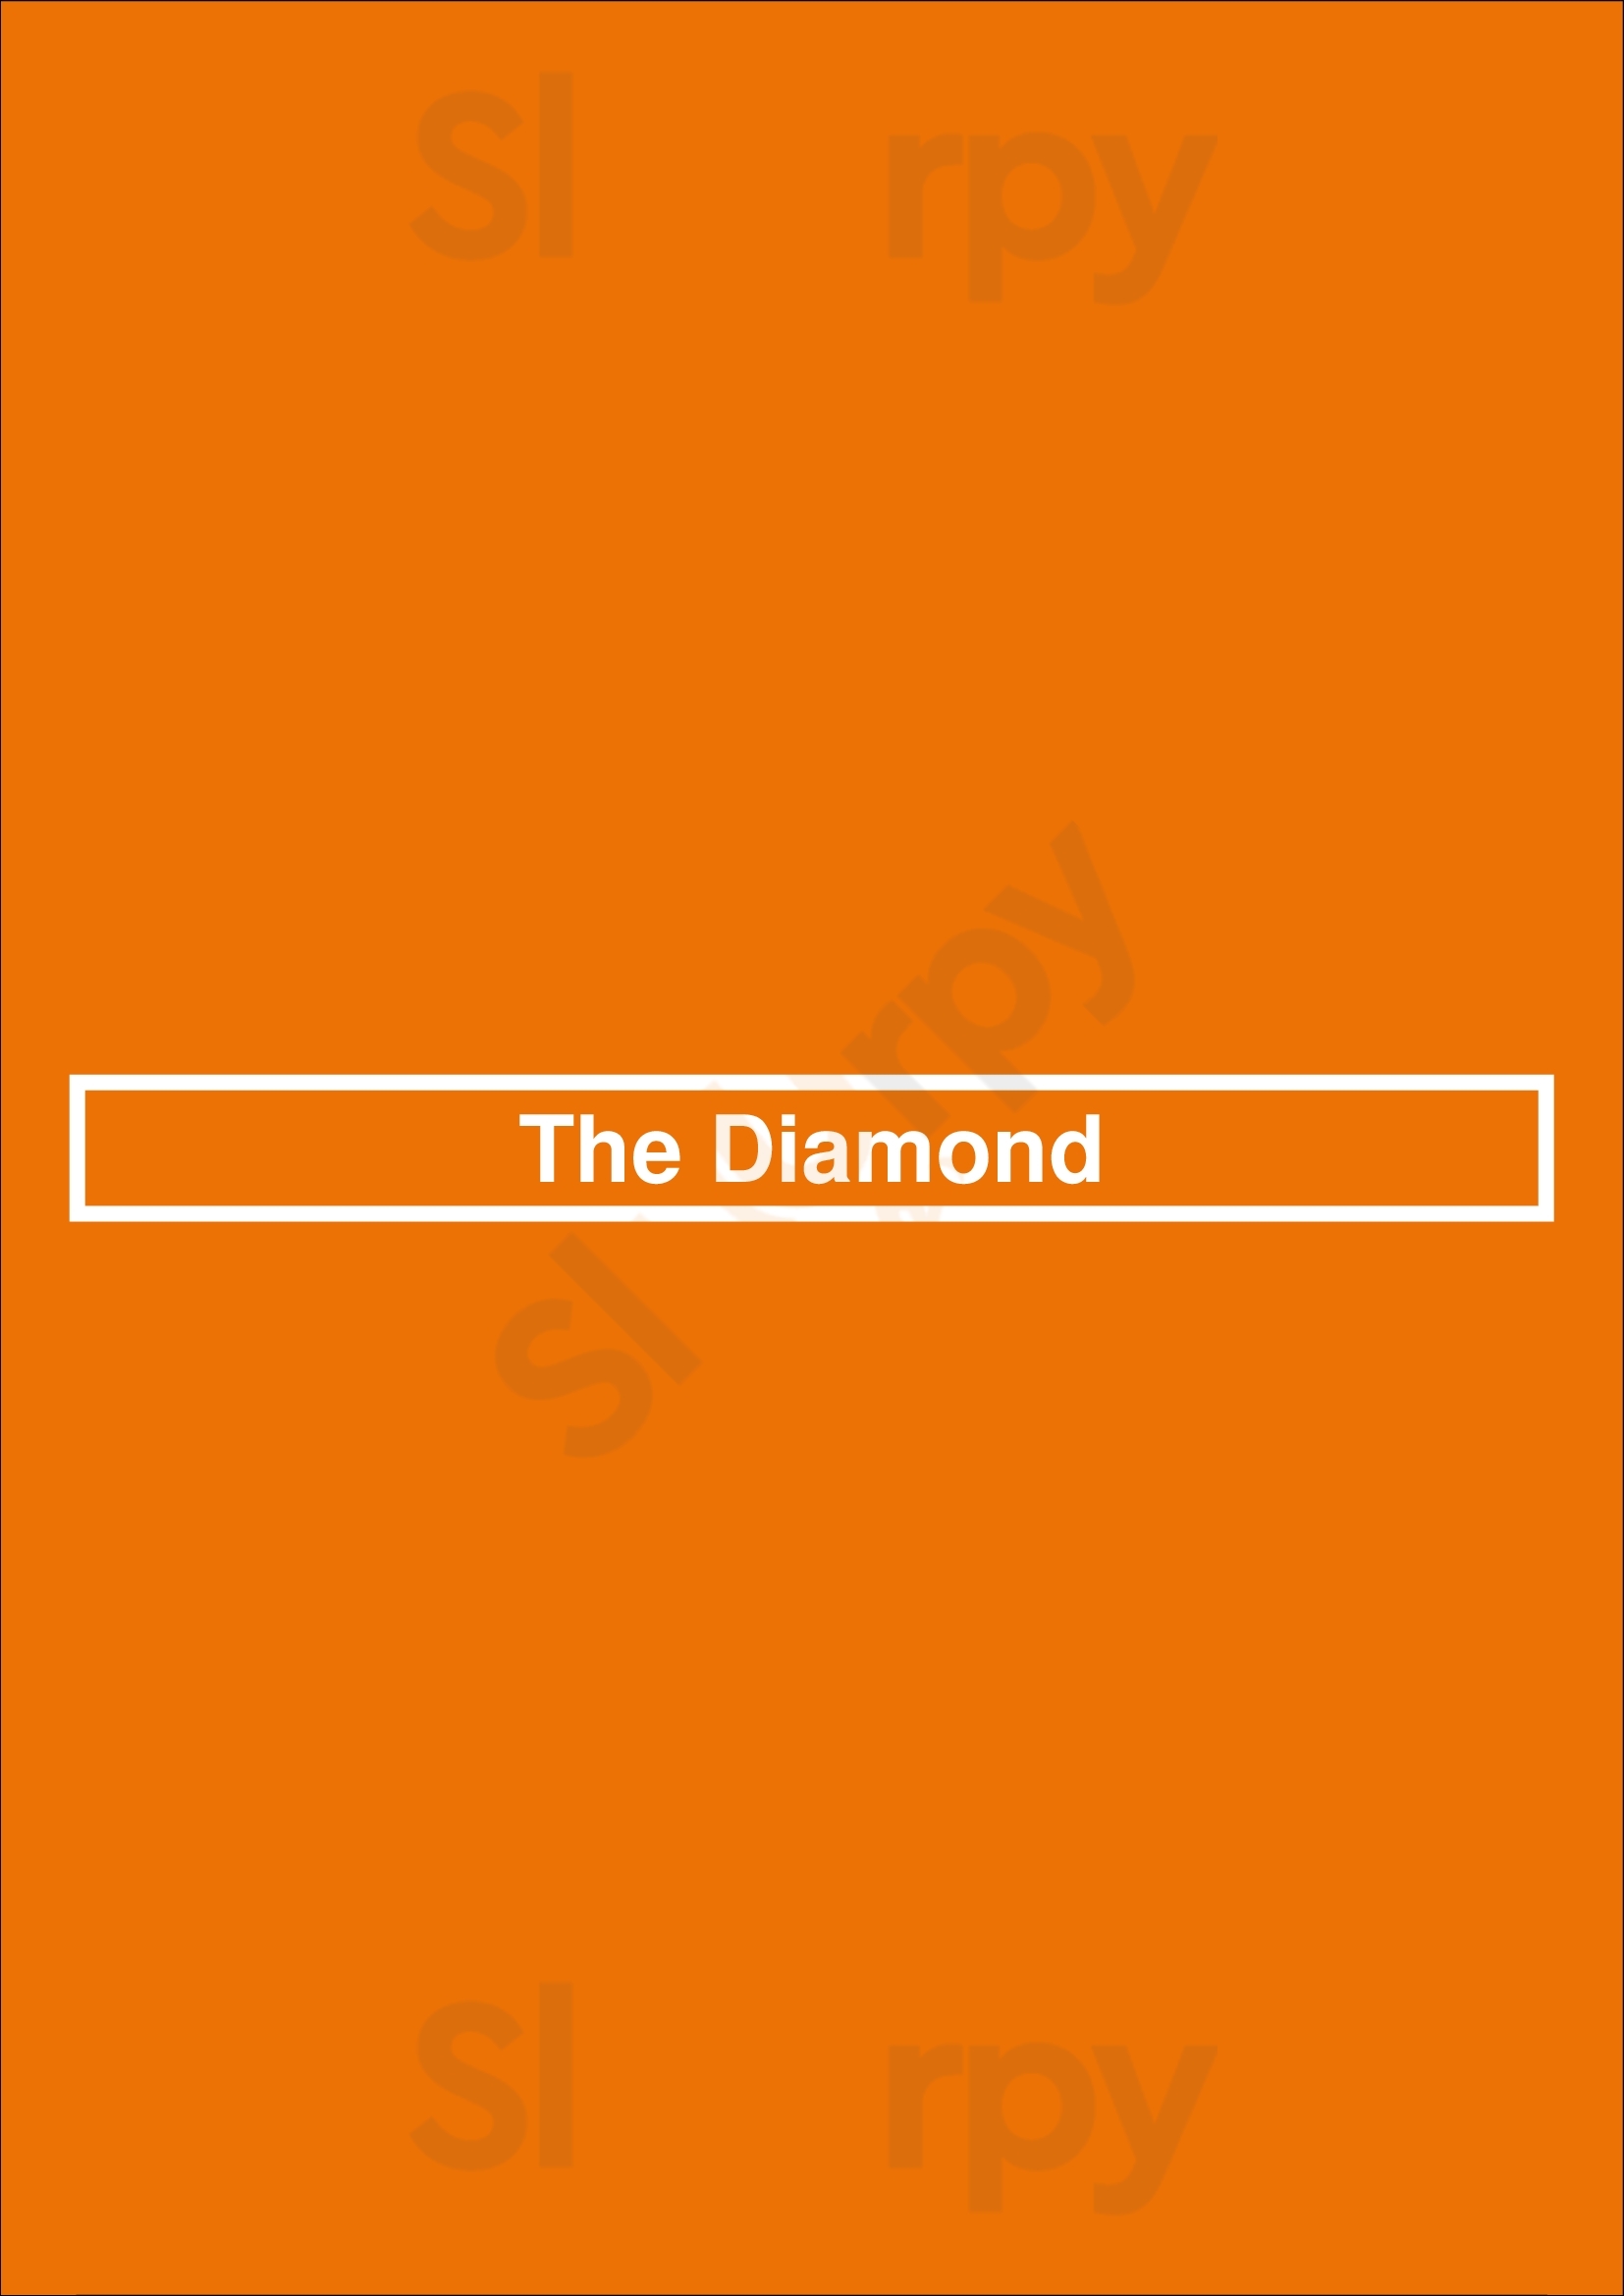 The Diamond Vancouver Menu - 1